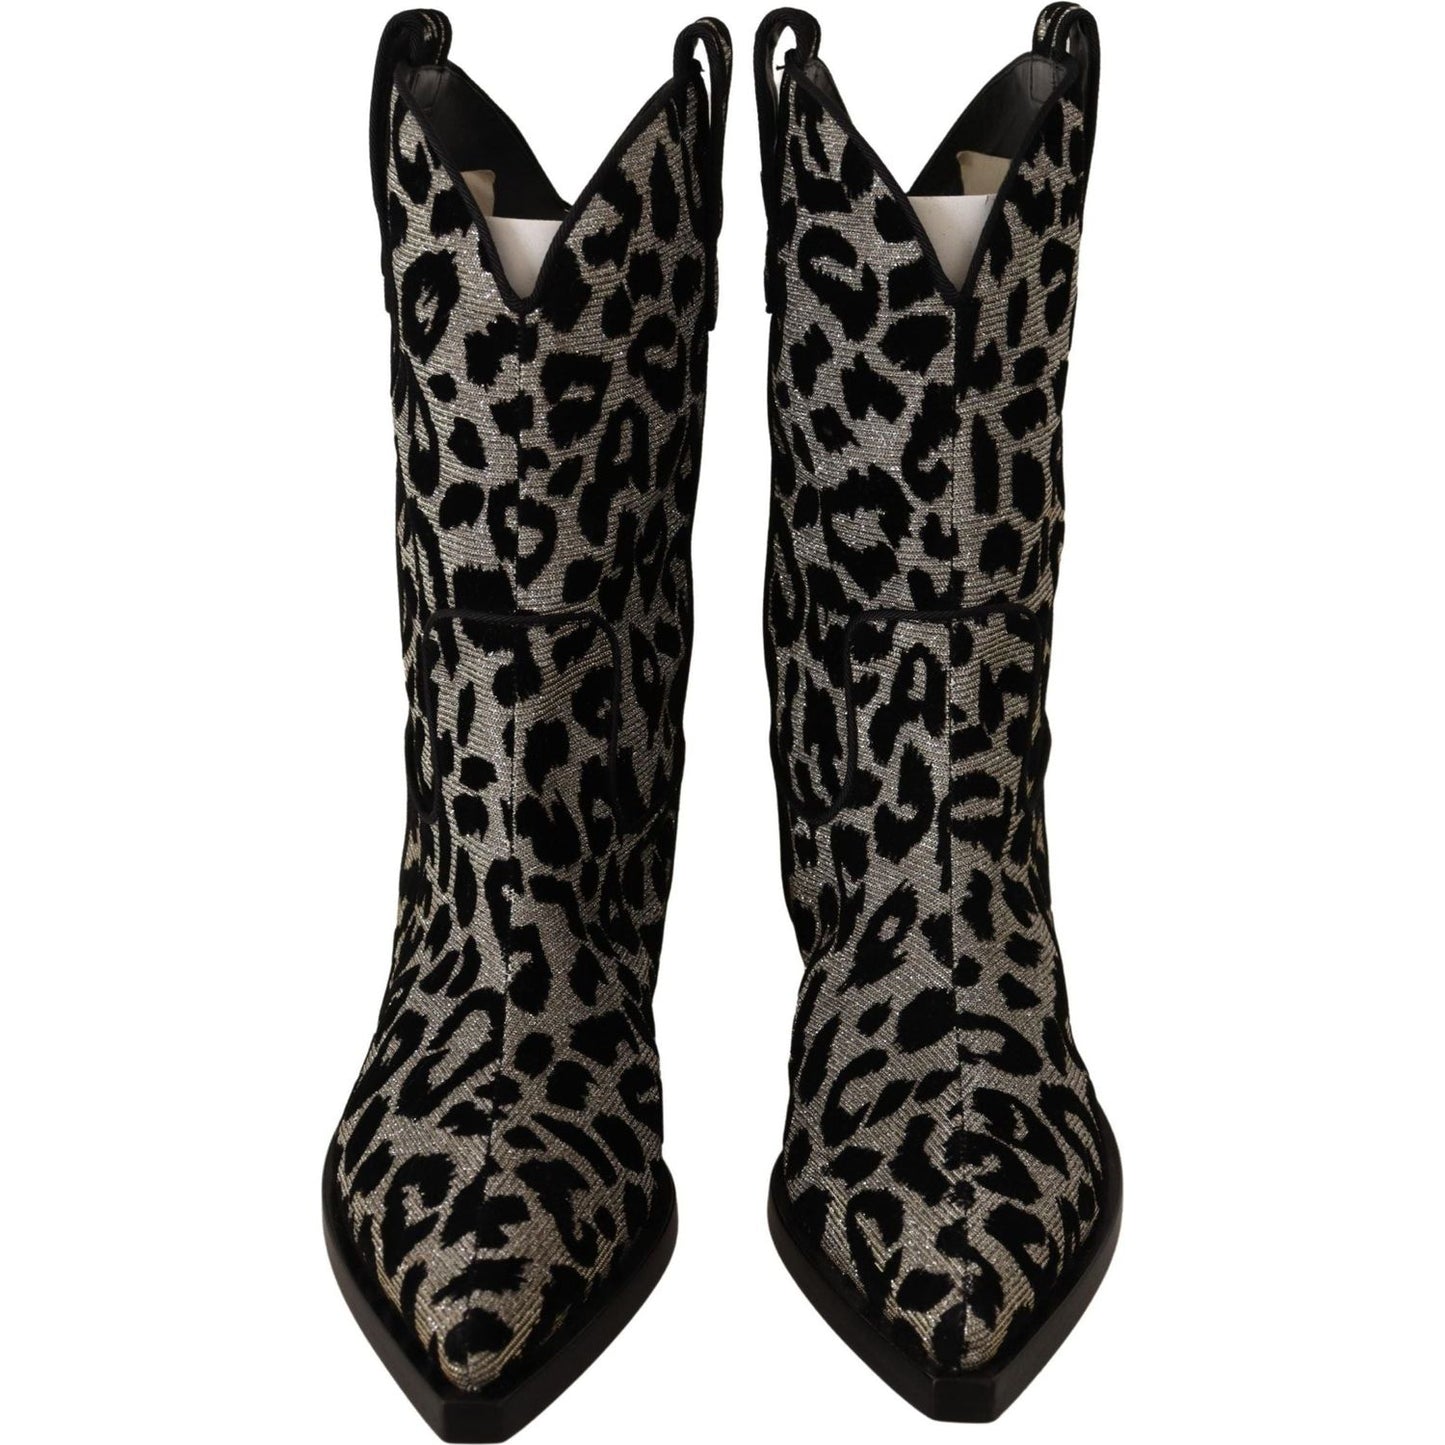 Dolce & Gabbana Elegant Leopard Print Mid Calf Boots gray-black-leopard-cowboy-boots-shoes